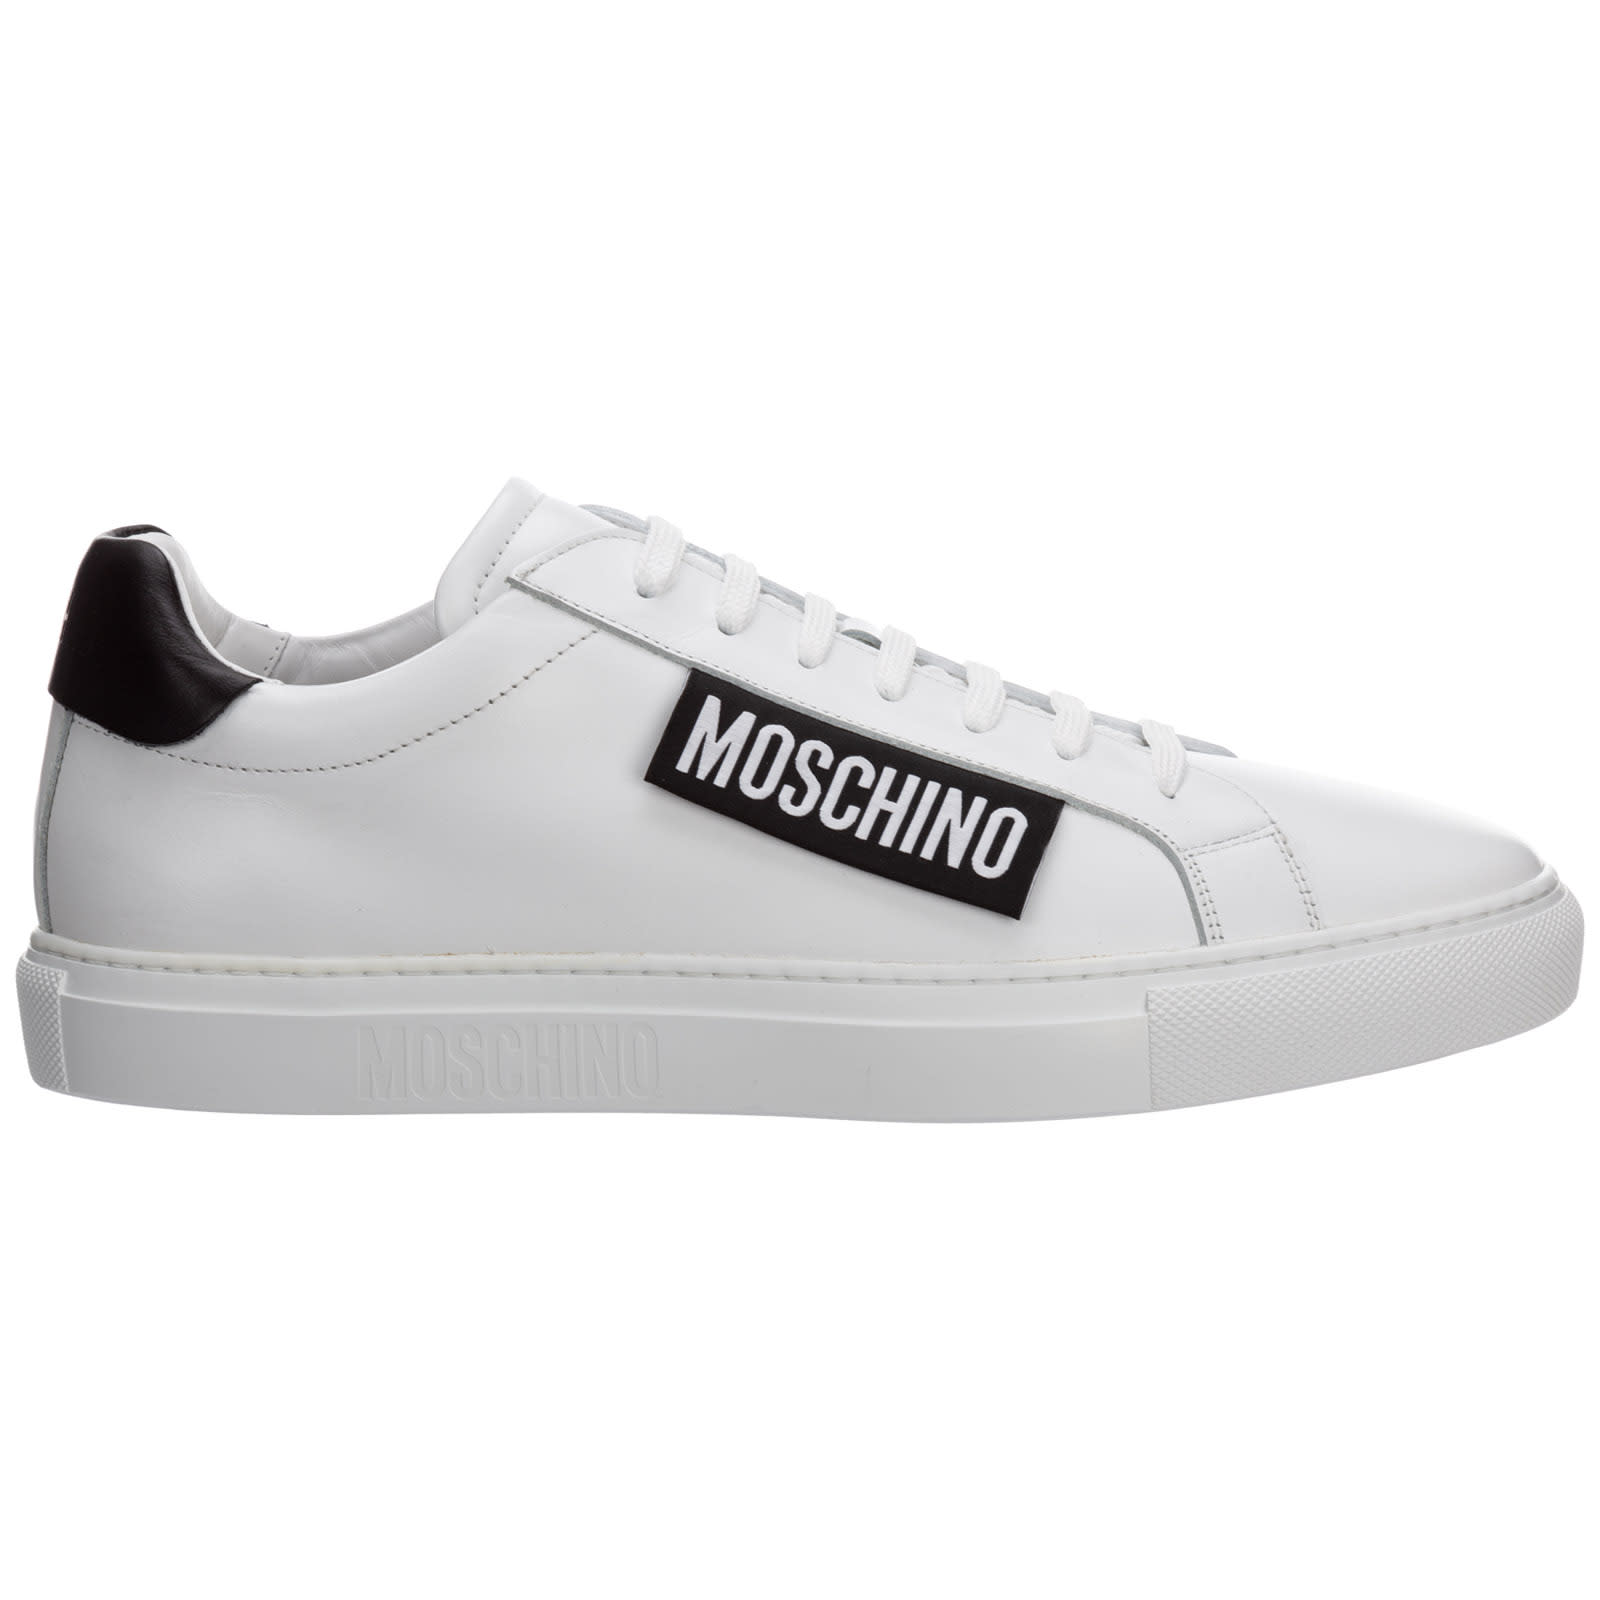 Moschino Cassetta Sneakers